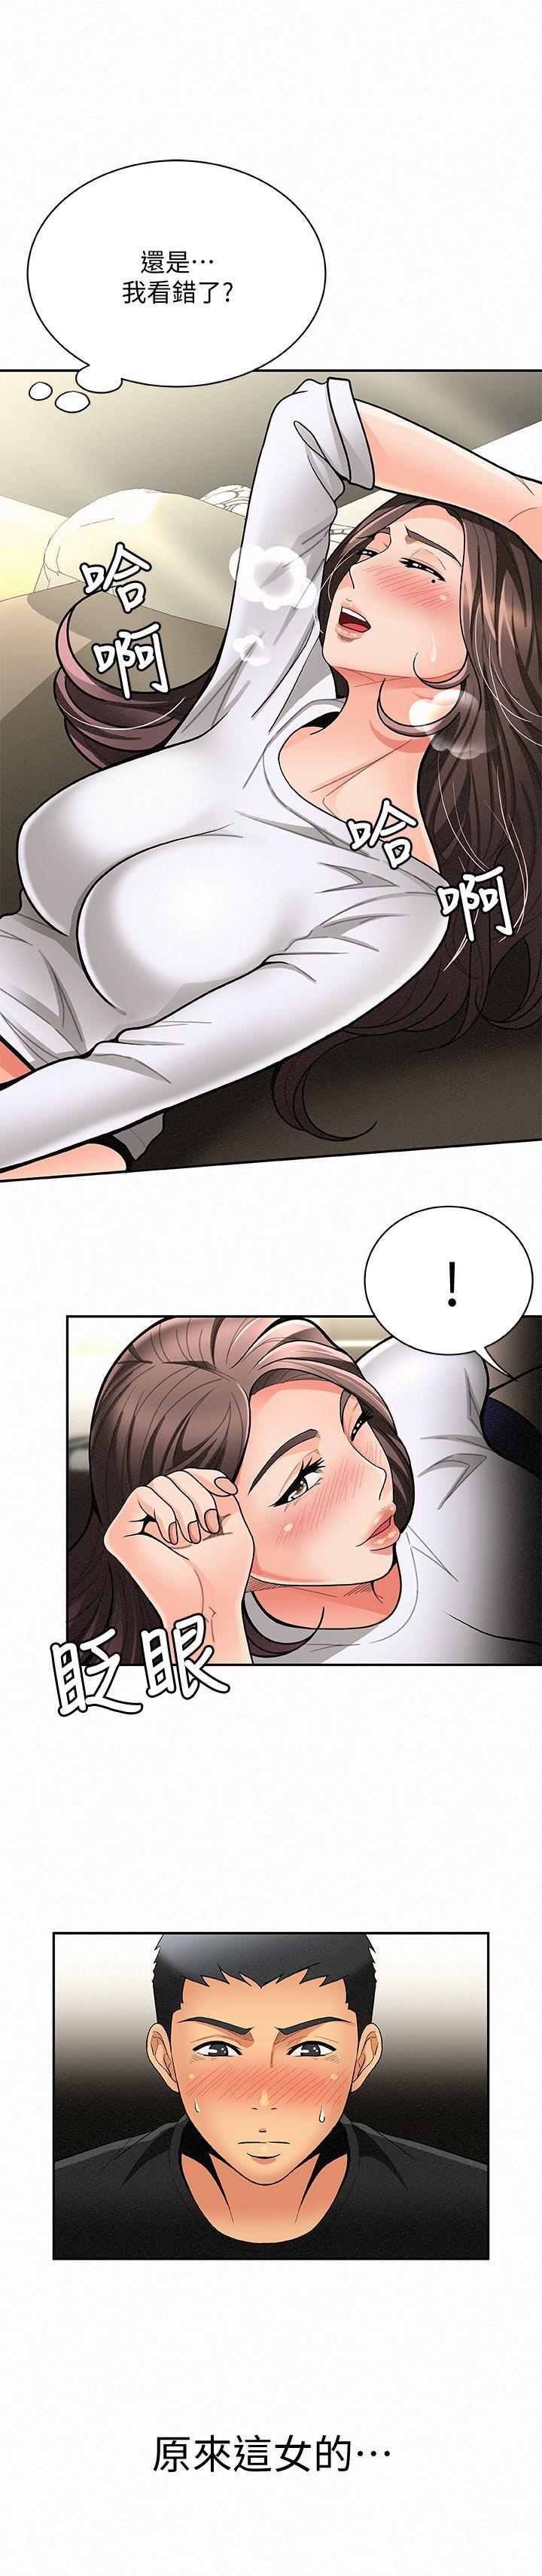 韩国污漫画 報告夫人 第6话-身体力行的家教课 2